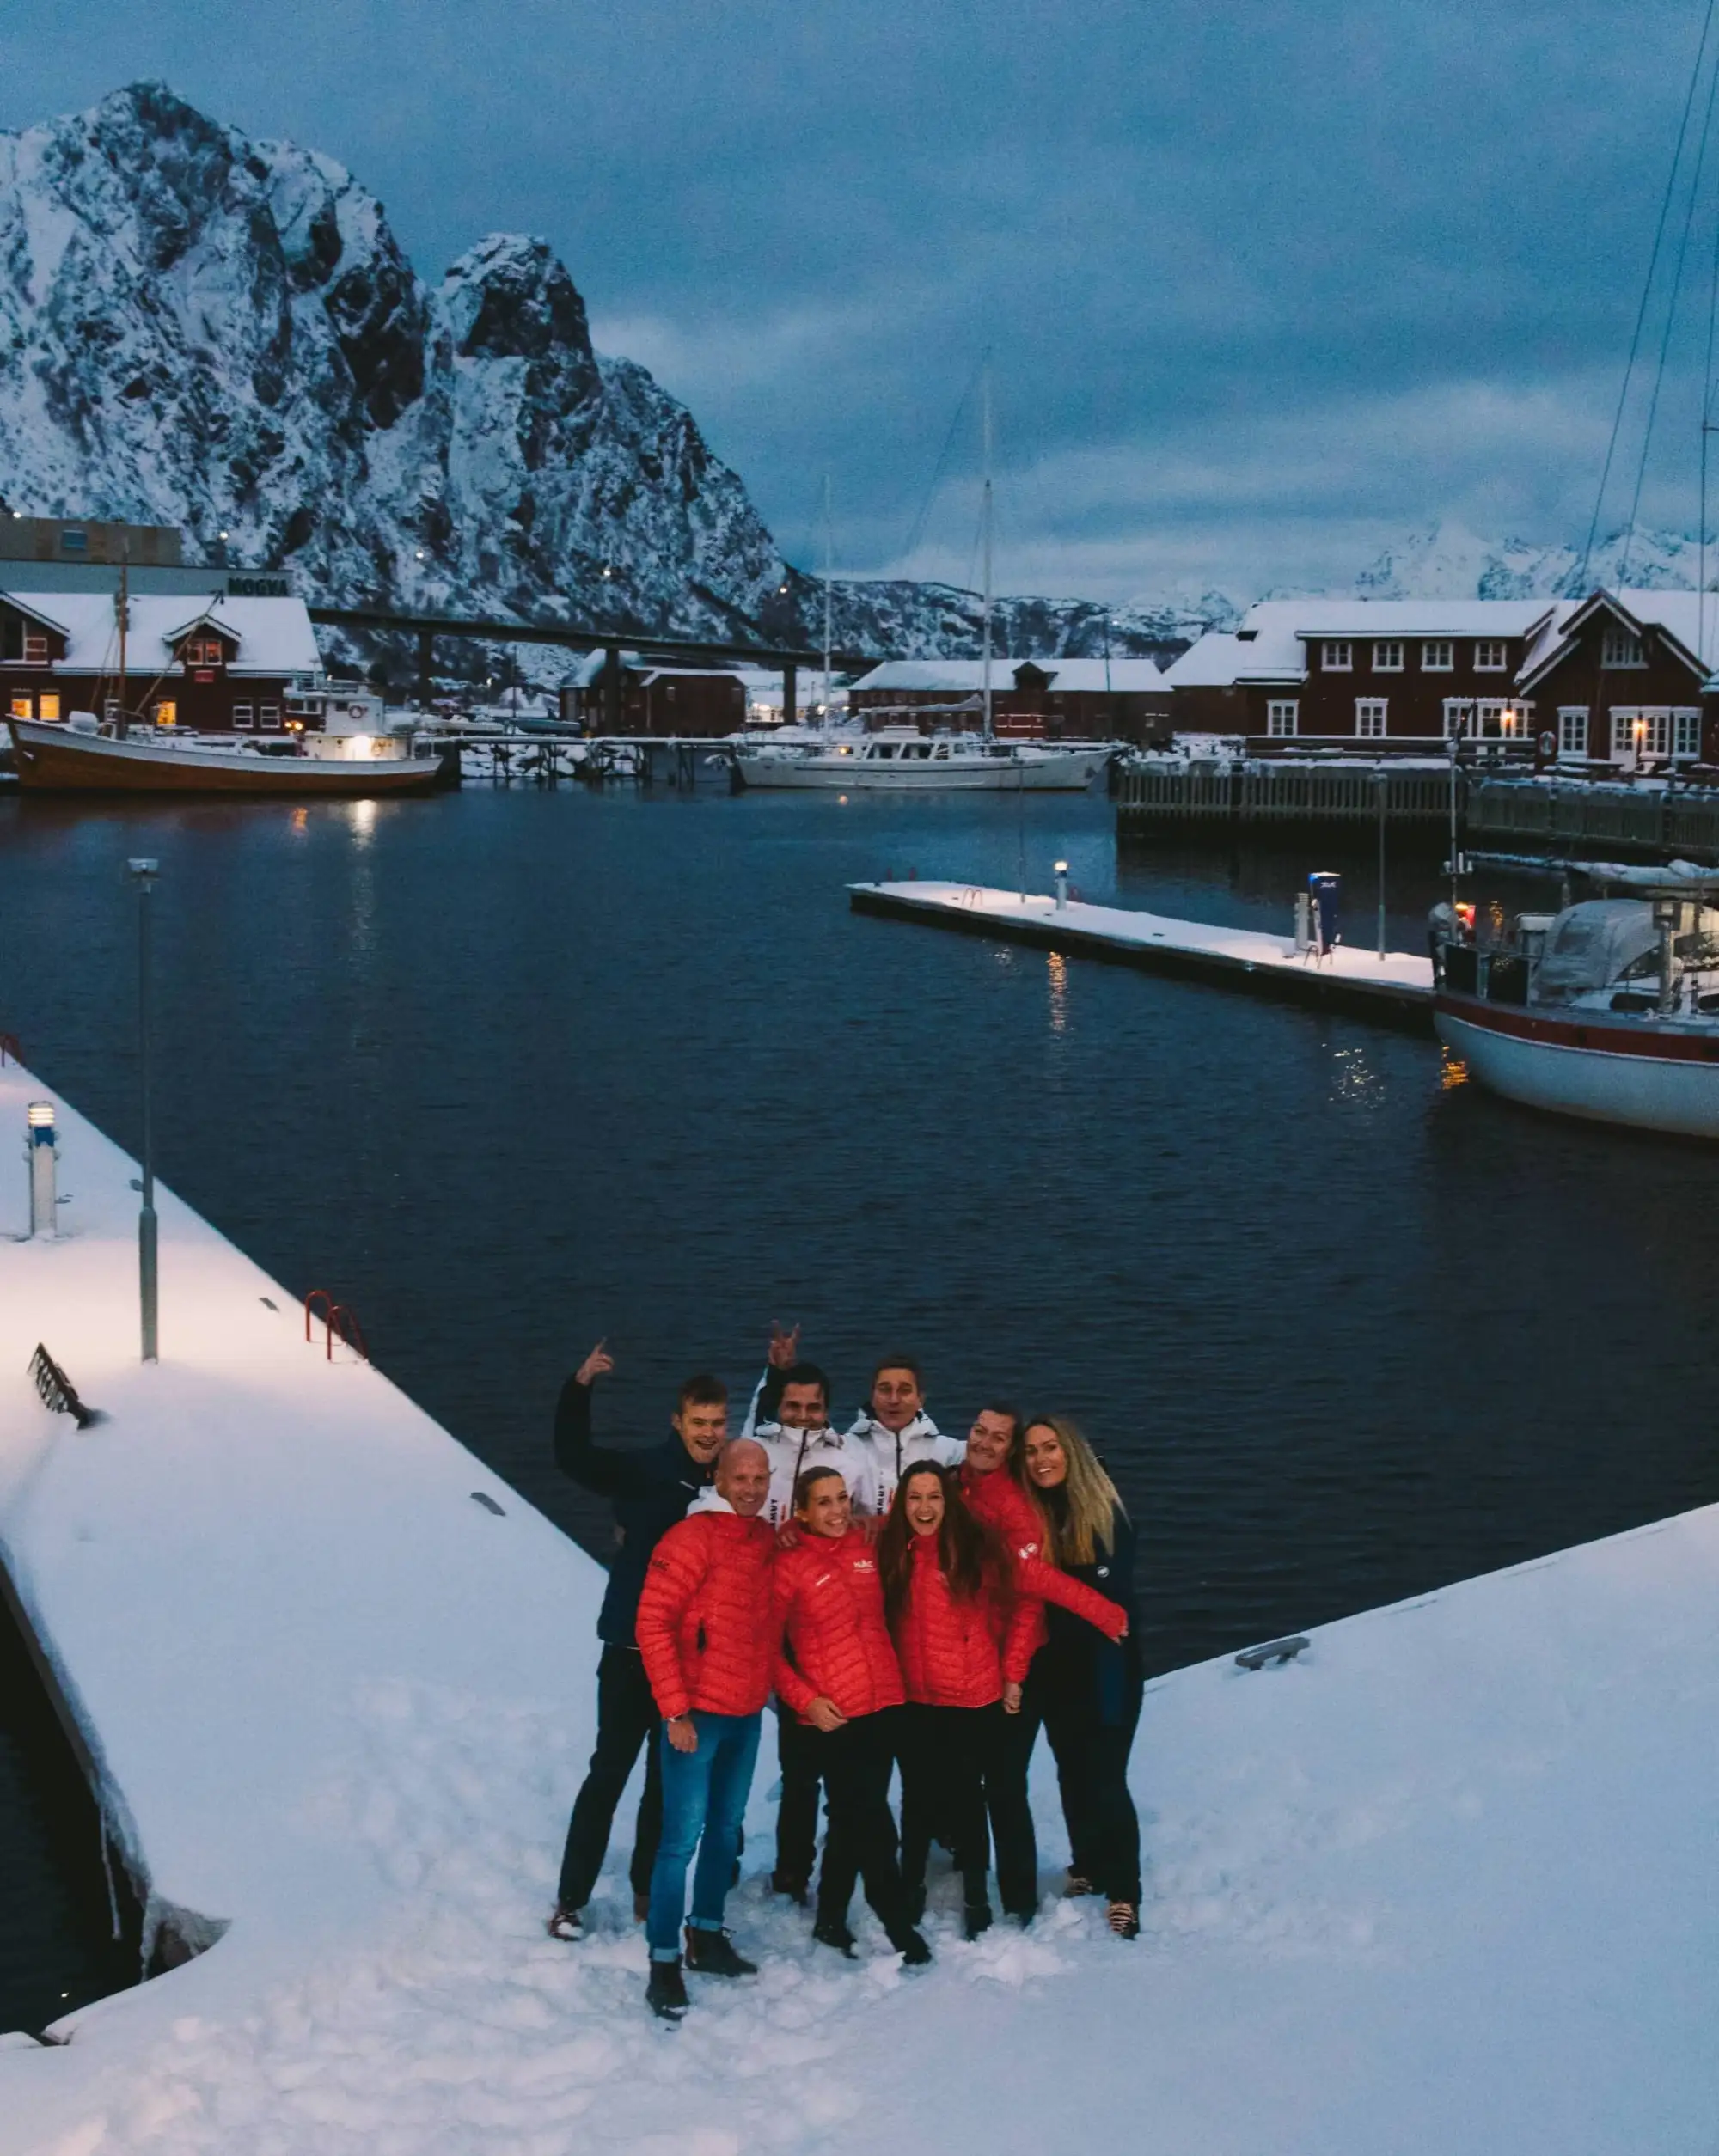 2021-11-30-Personalet-DSC02612-norwegian-adventure-company.jpg – Norwegian Adventure Company